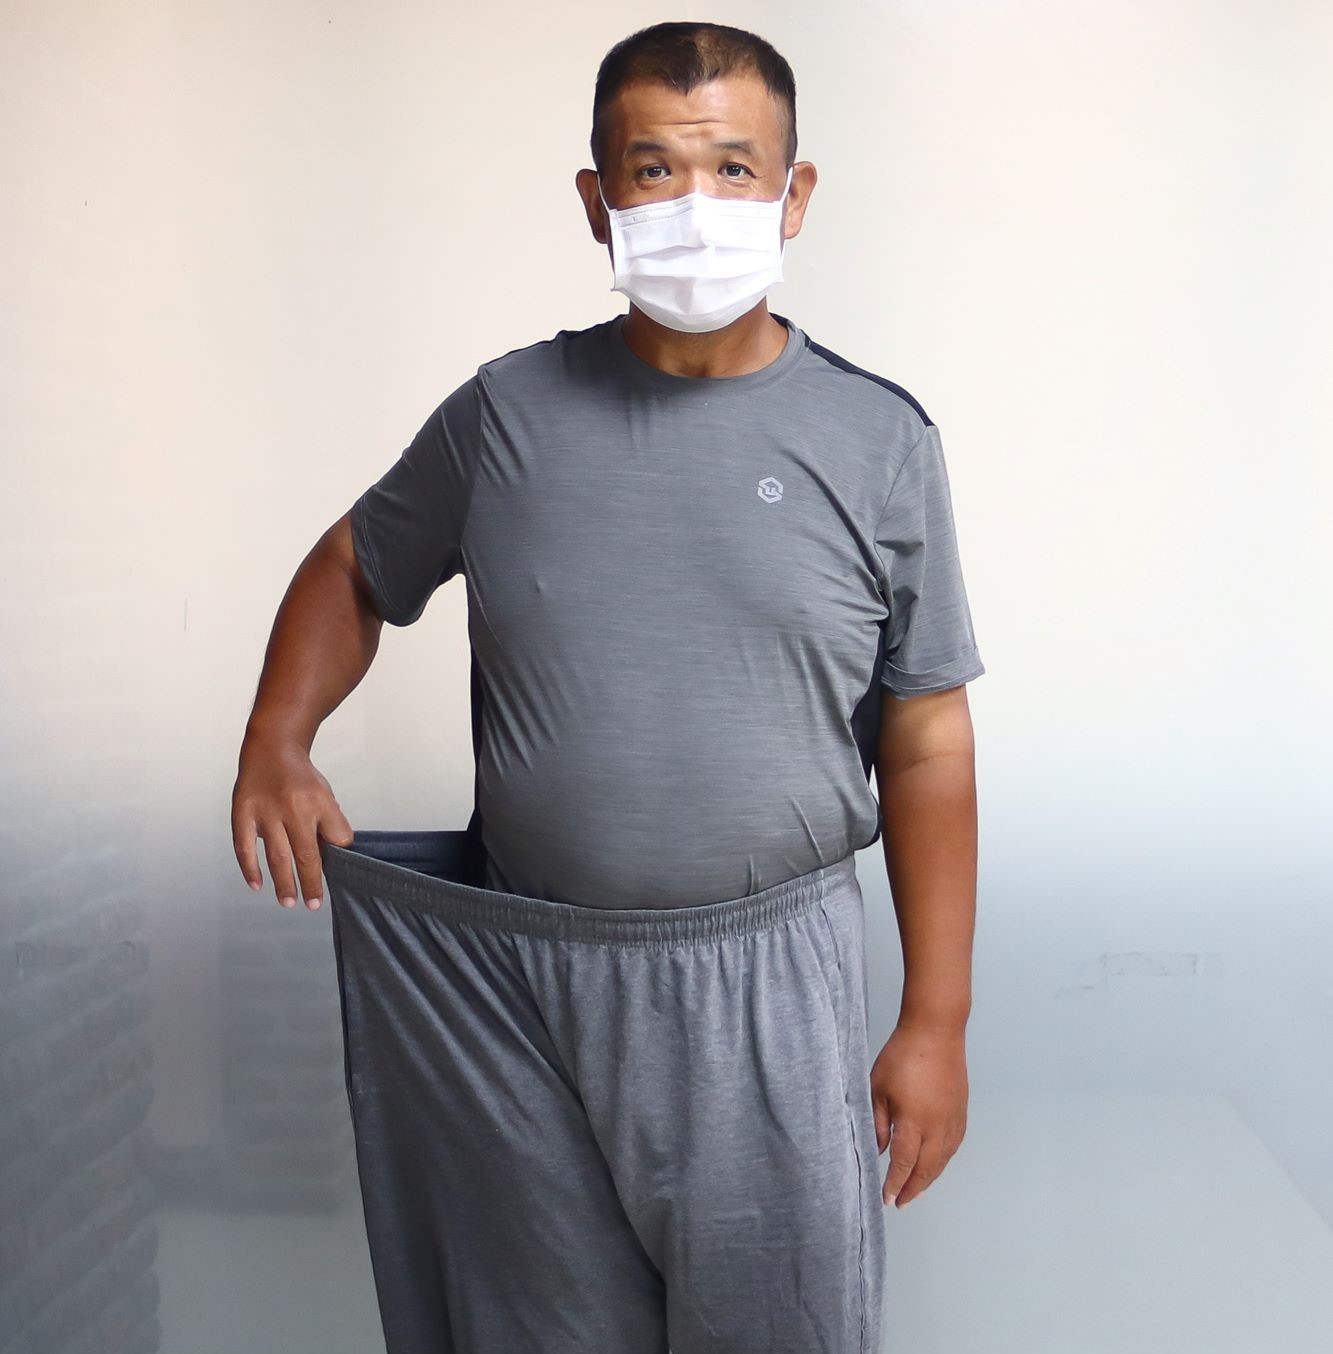 王温忠依照健康減重團隊的建議進行體重控制，八個月來成功甩肉五十公斤，腰圍從五十二吋減至三十八吋，重穿以前的褲子明顯寬大許多。(圖/東基提供)